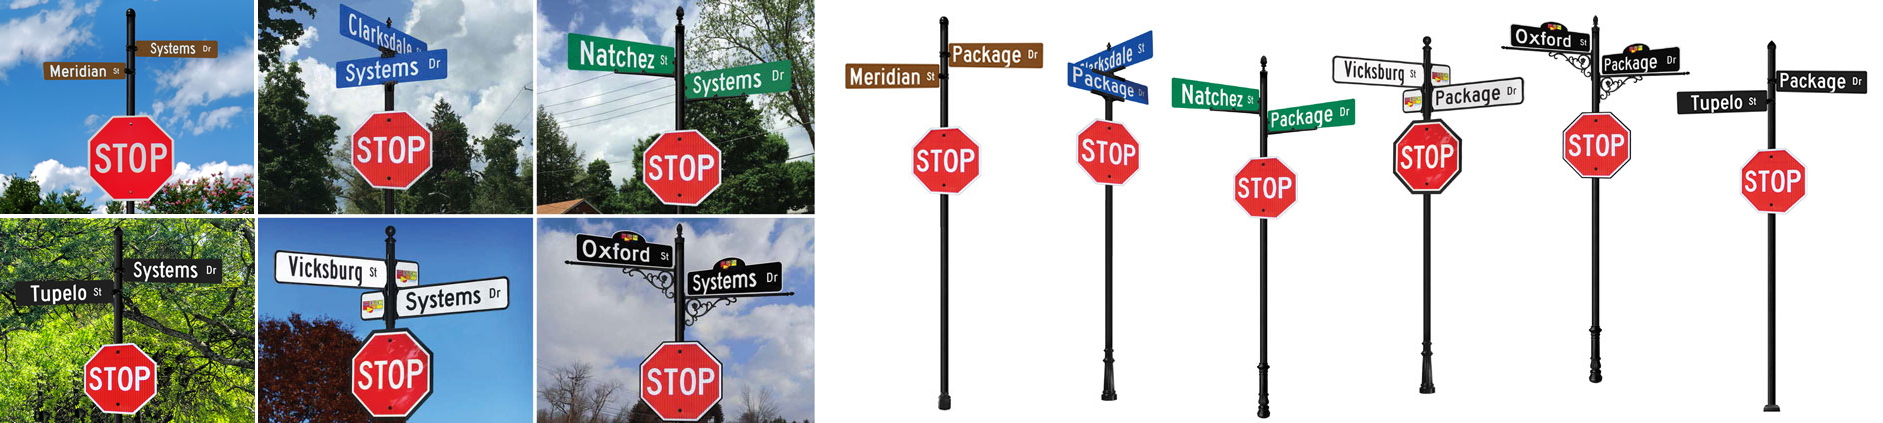 Ornamental Custom Street Name Systems